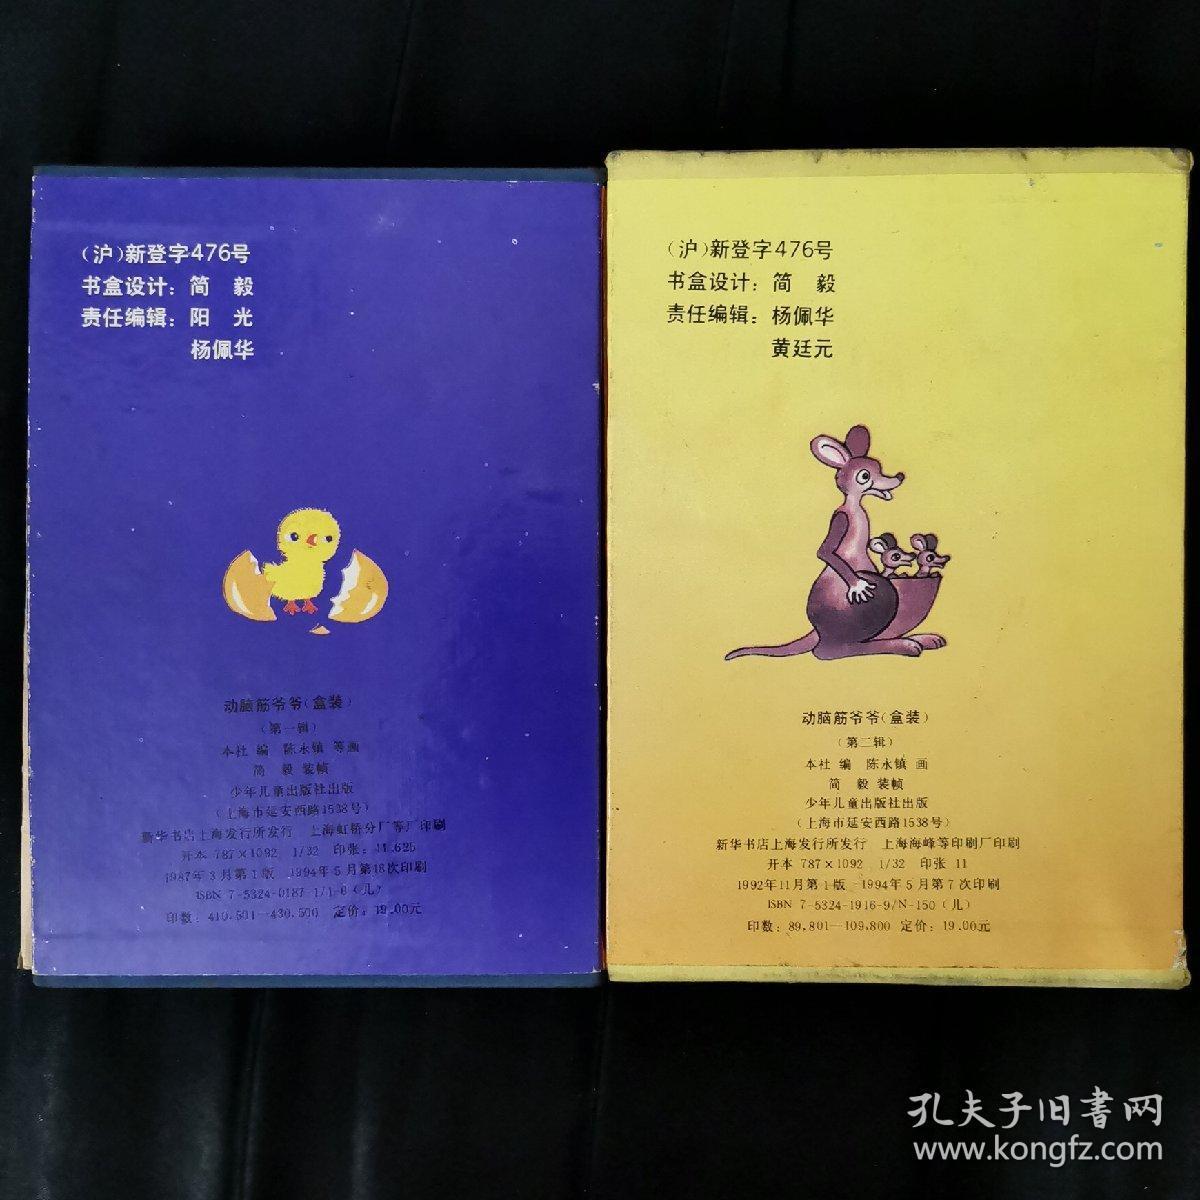 动脑筋爷爷(第一辑、第二辑)两辑合售共16册

平装书带精装盒